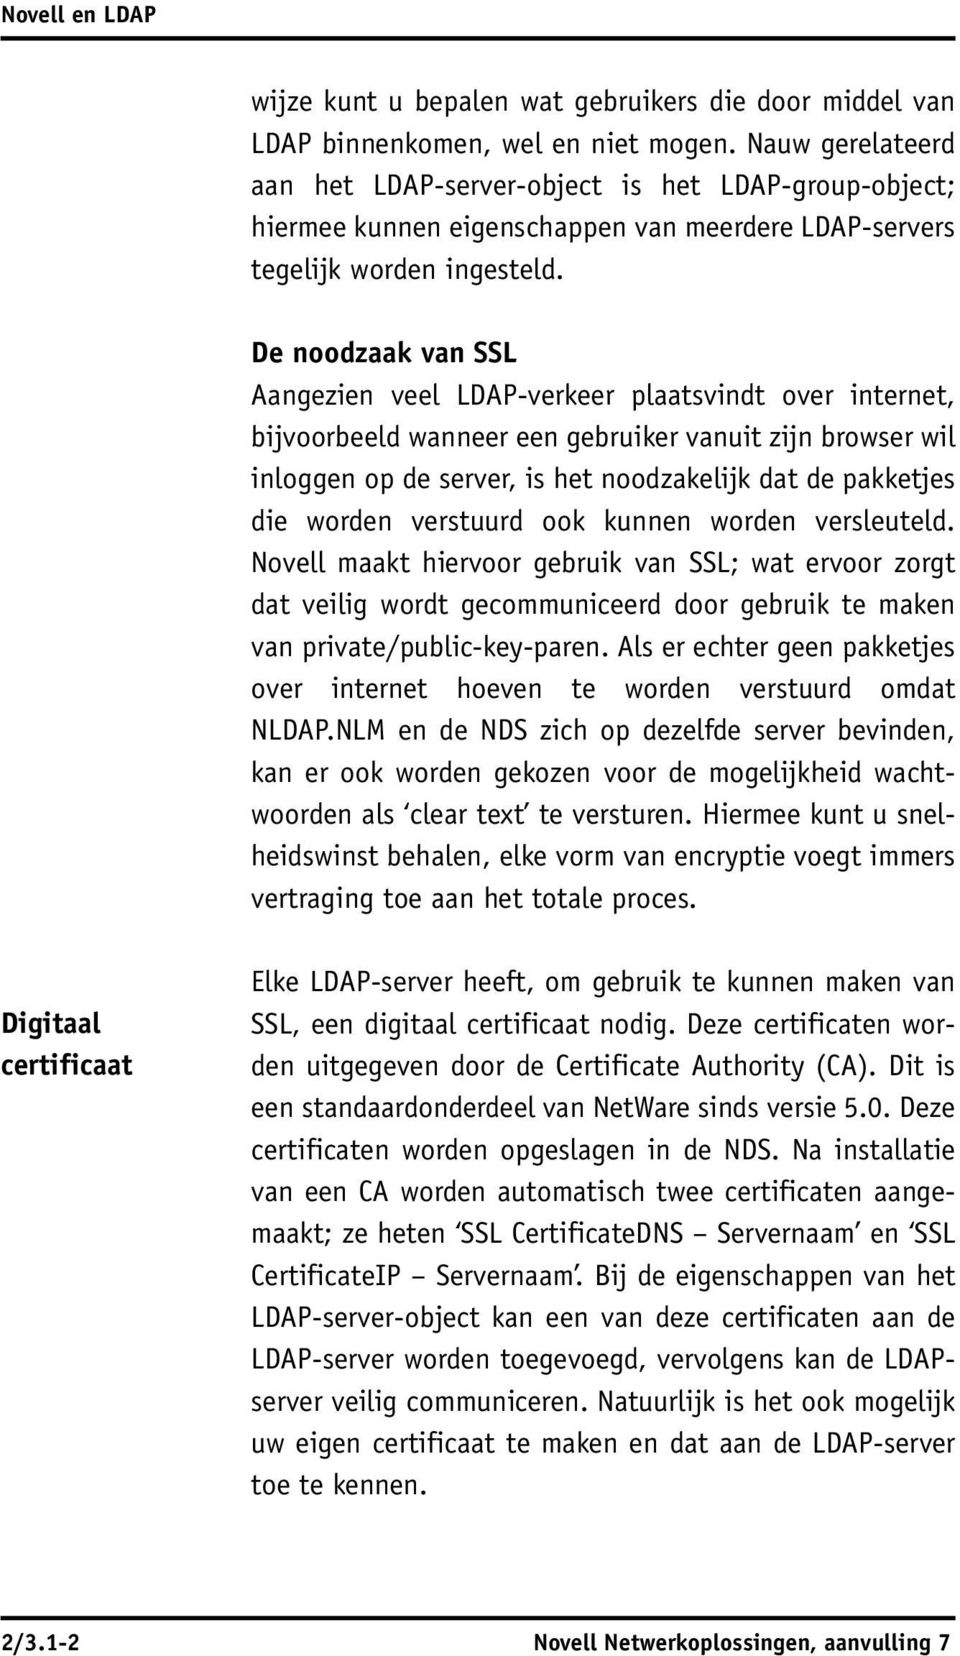 De noodzaak van SSL Aangezien veel LDAP-verkeer plaatsvindt over internet, bijvoorbeeld wanneer een gebruiker vanuit zijn browser wil inloggen op de server, is het noodzakelijk dat de pakketjes die